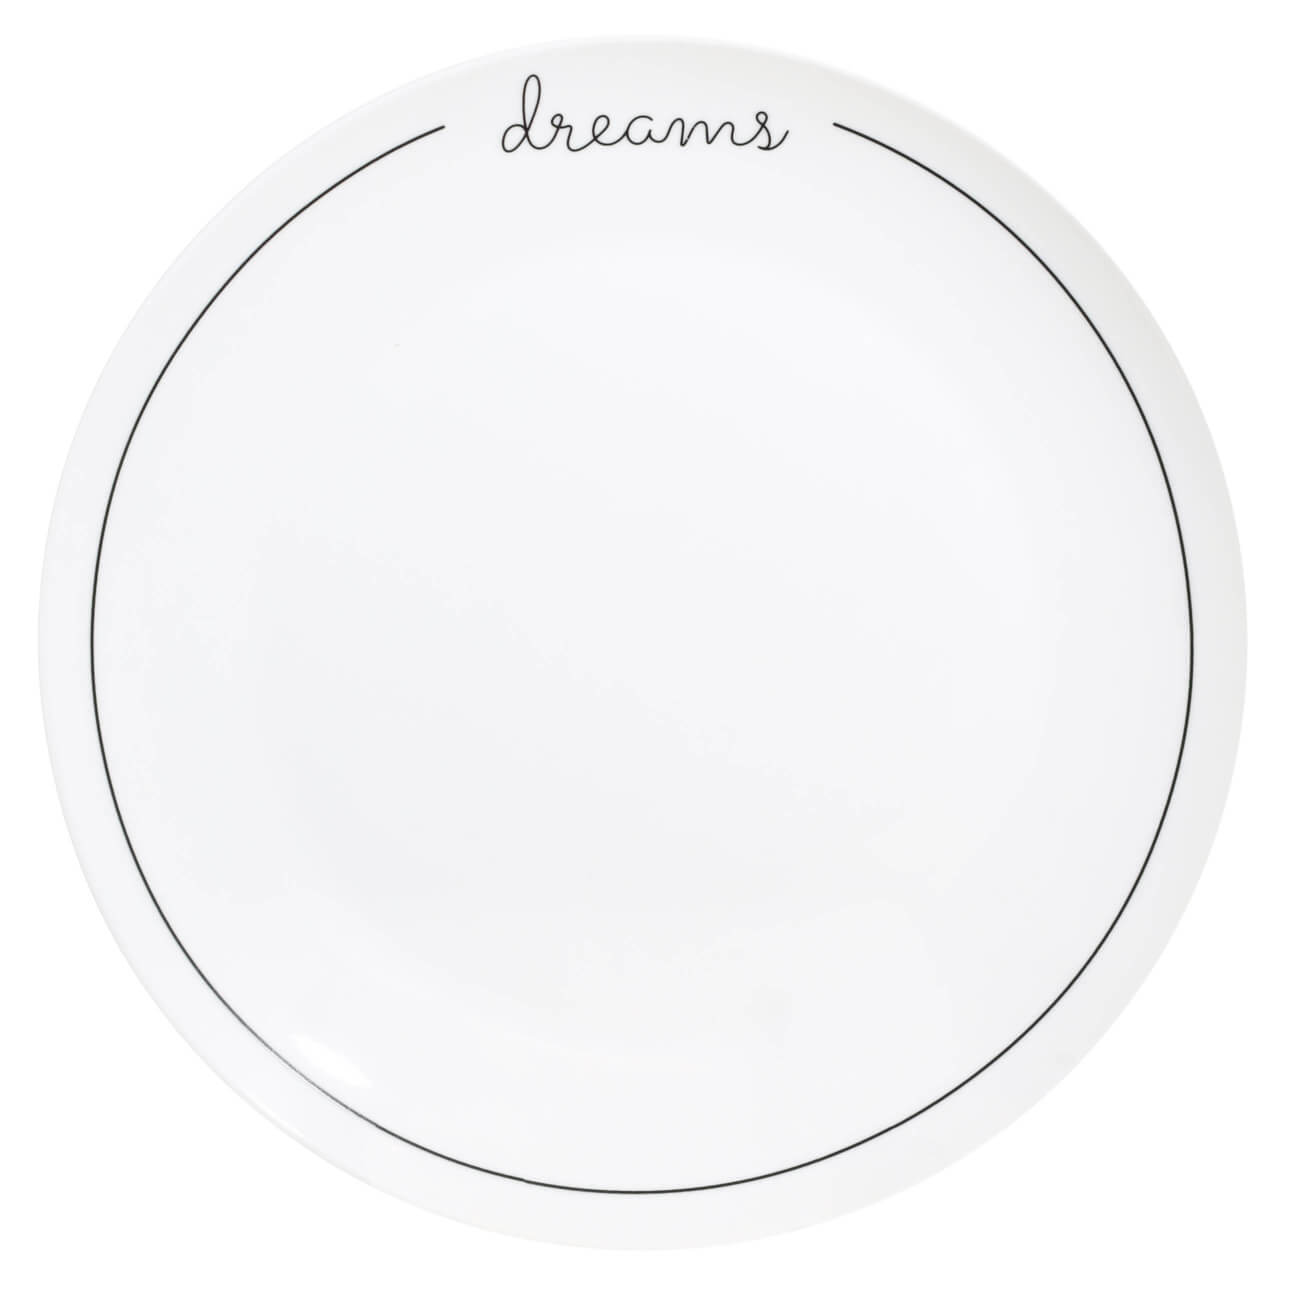 Тарелка обеденная, 27 см, фарфор N, белая, Dreams, Scroll white тарелка обеденная bronco meadow 29x23 см мятный арт 474 116